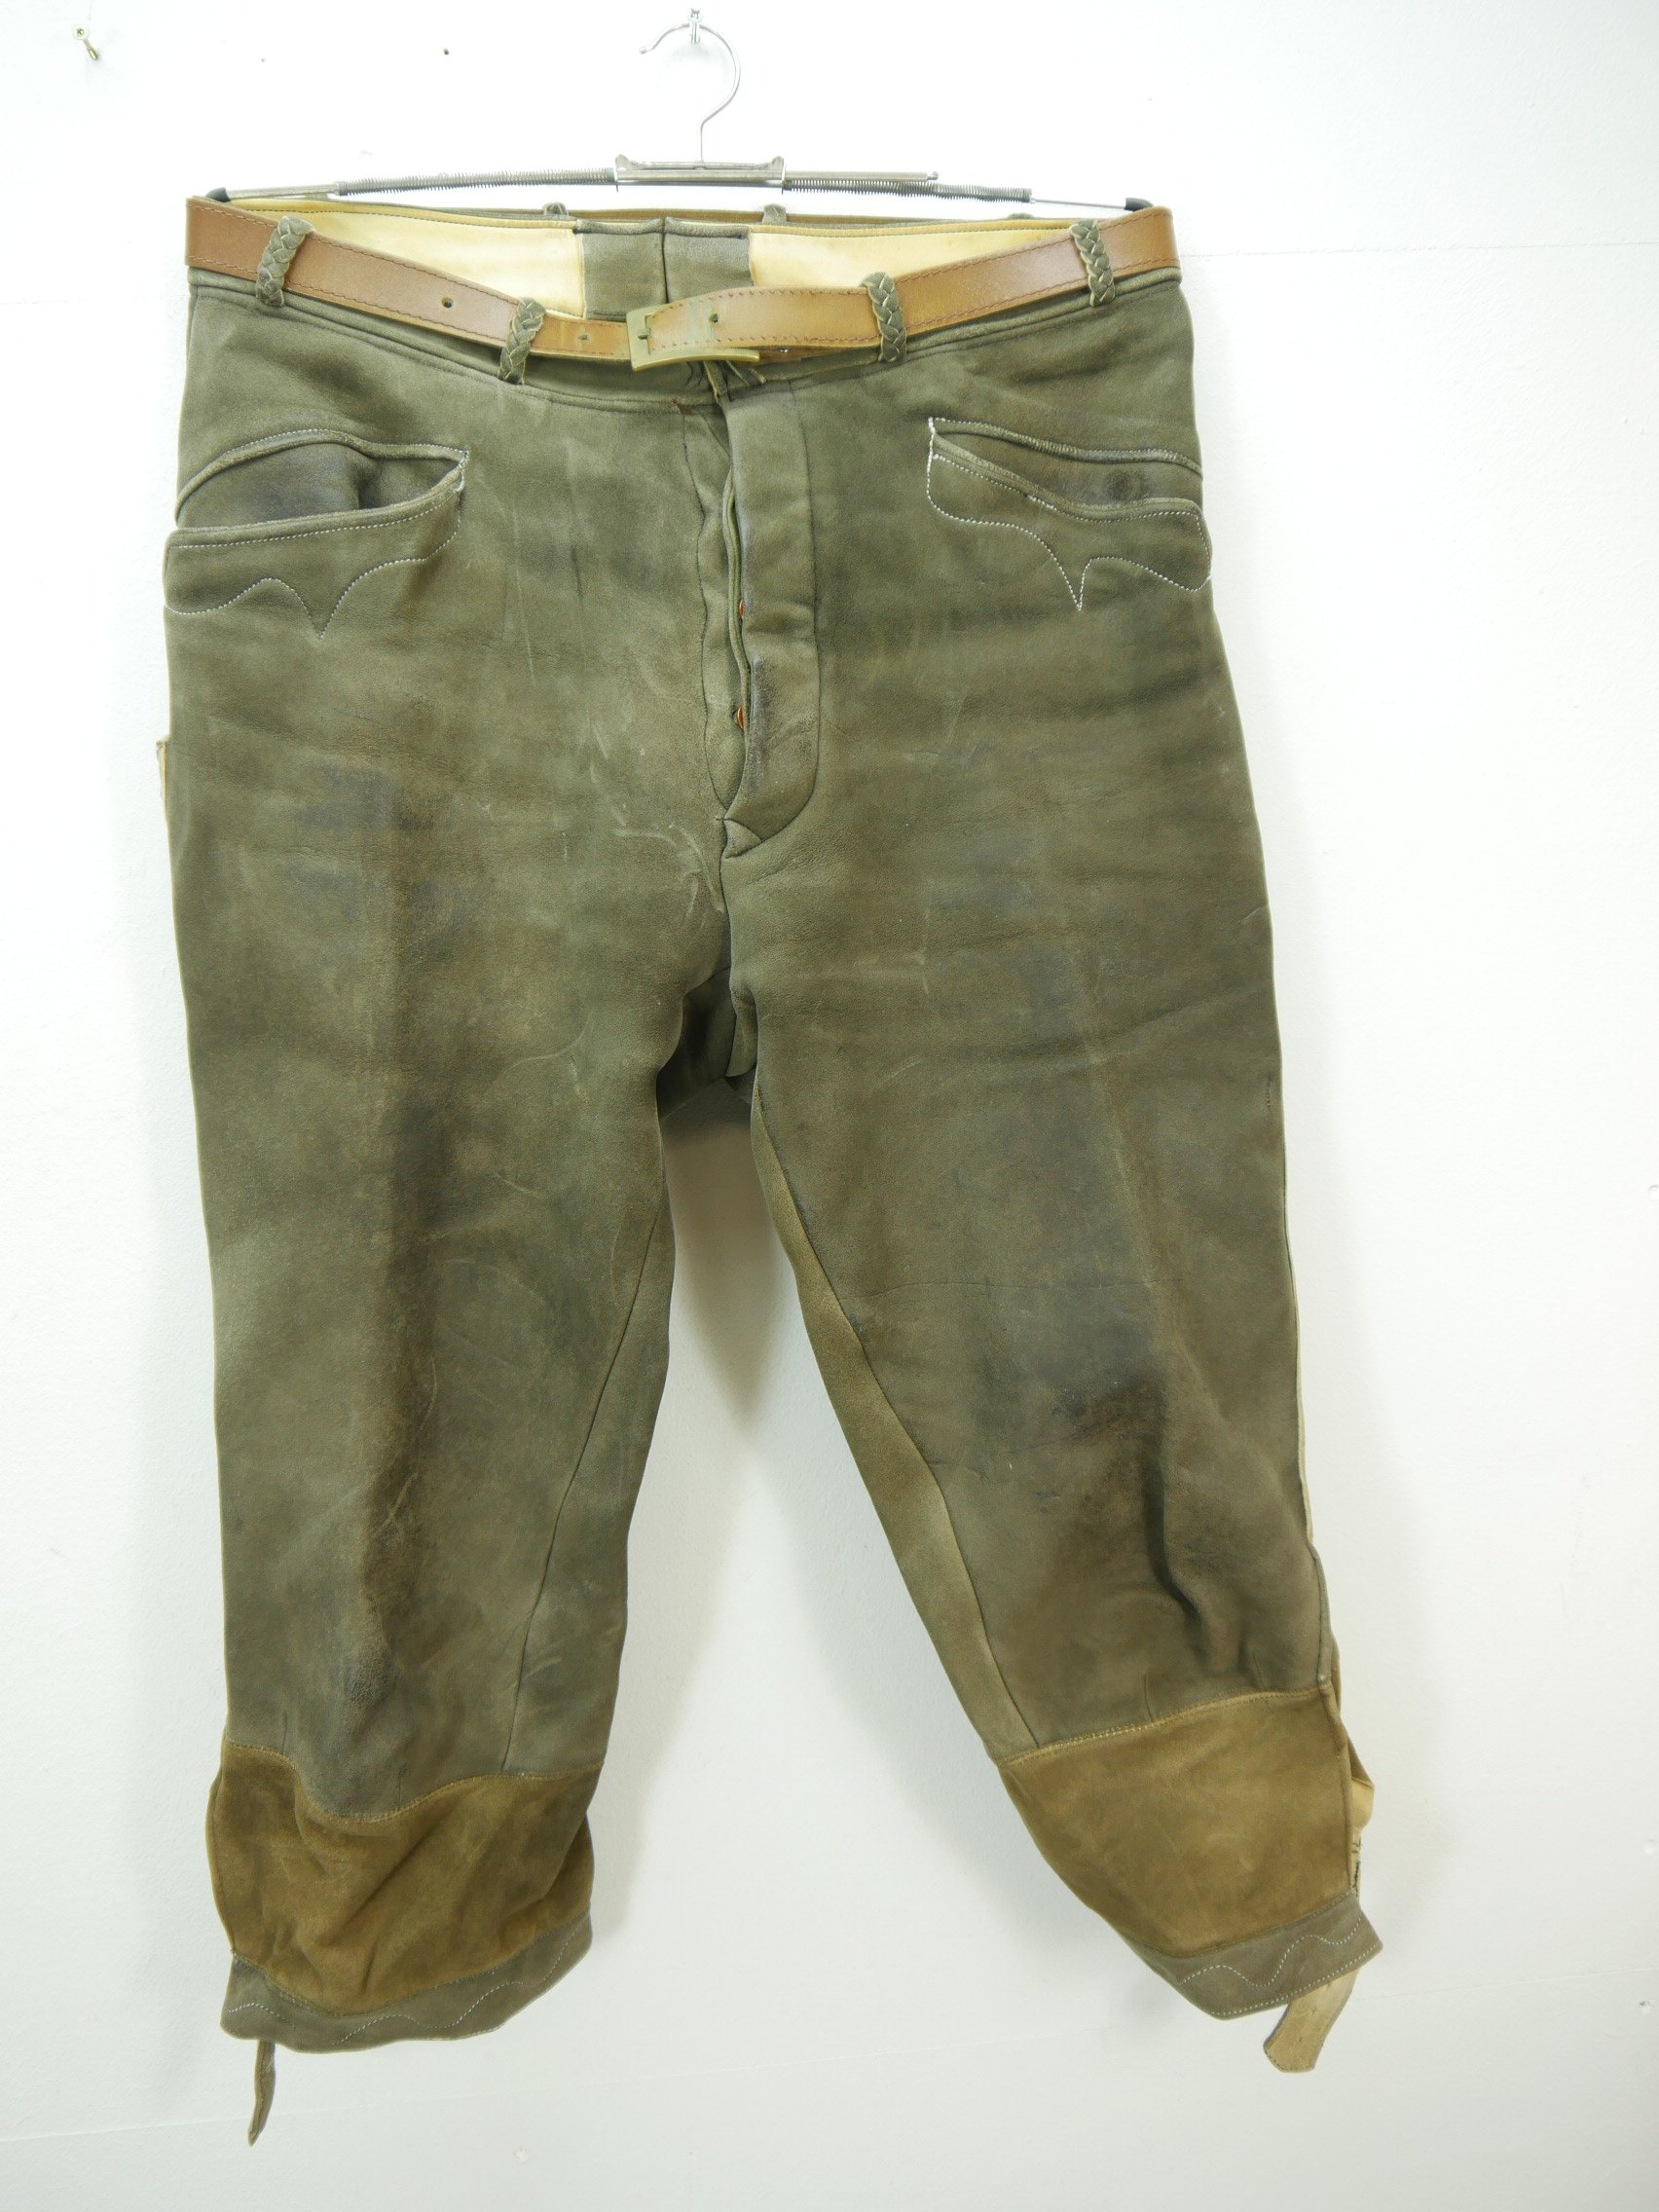 Hirsch- Elchleder Vintage Lederhose auf schlanke Größe verlängert Kniebund Gr.52